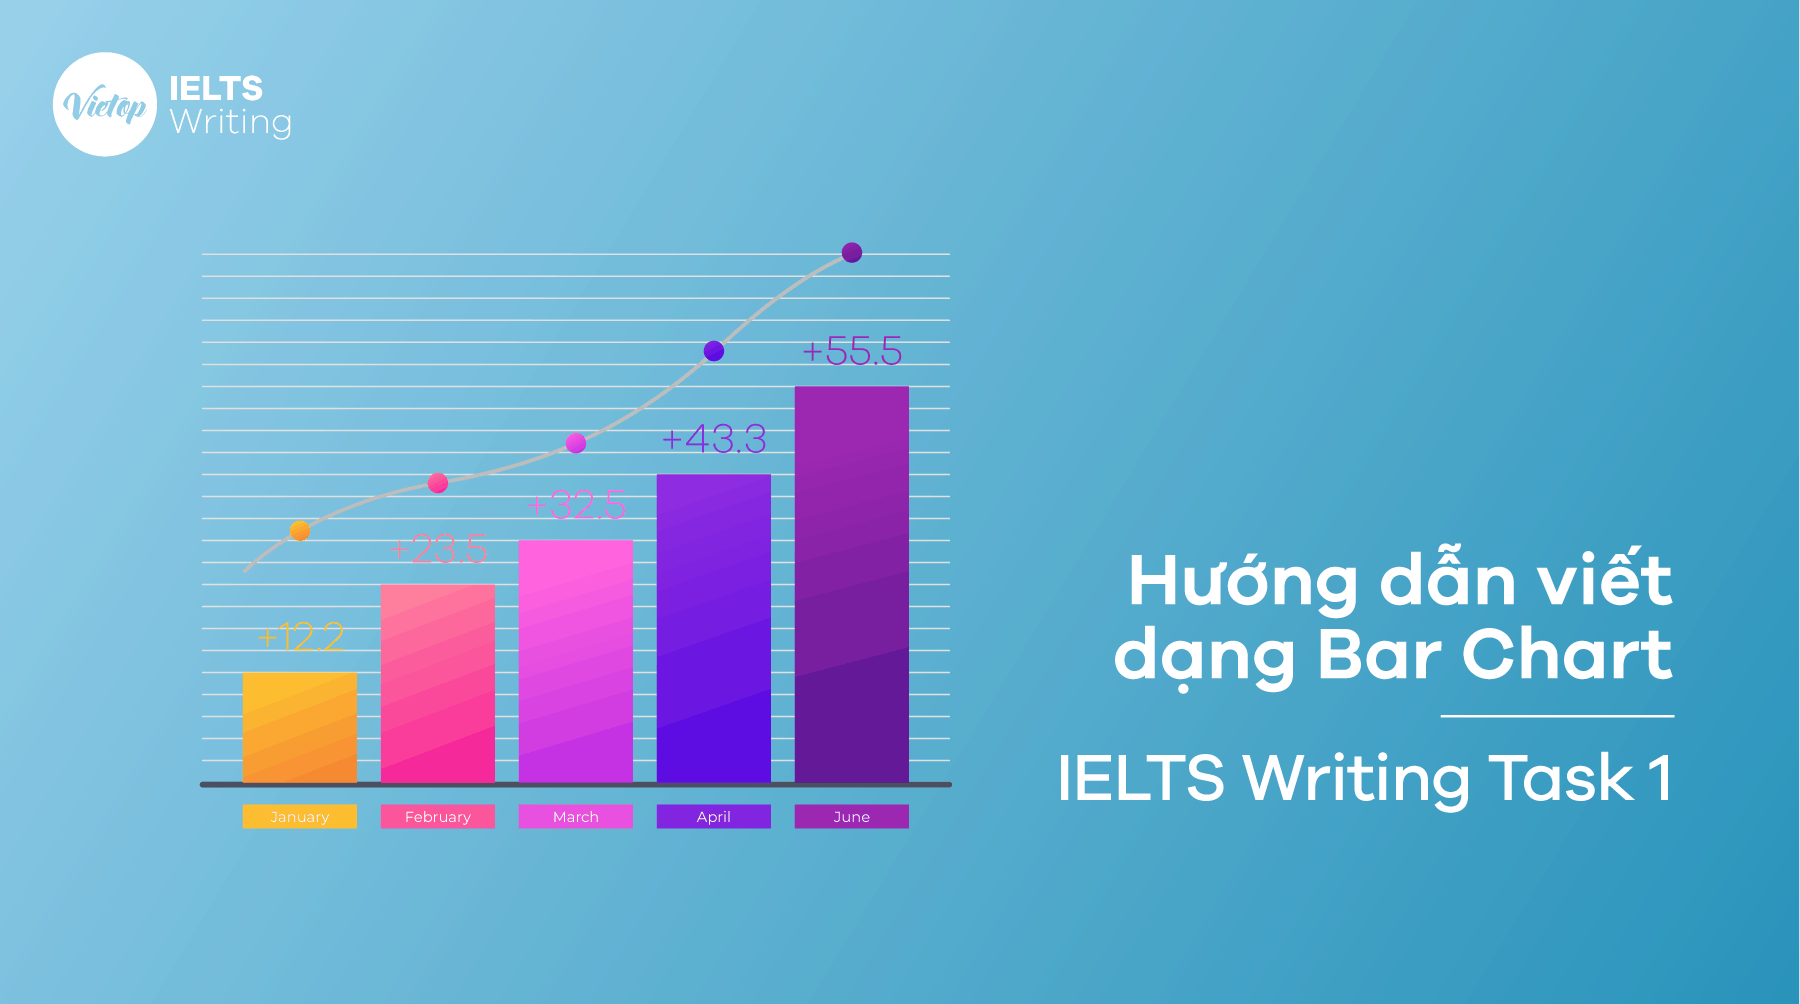 Cách viết IELTS Writing Task 1 dạng Bar Chart “chuẩn” bạn cần biết